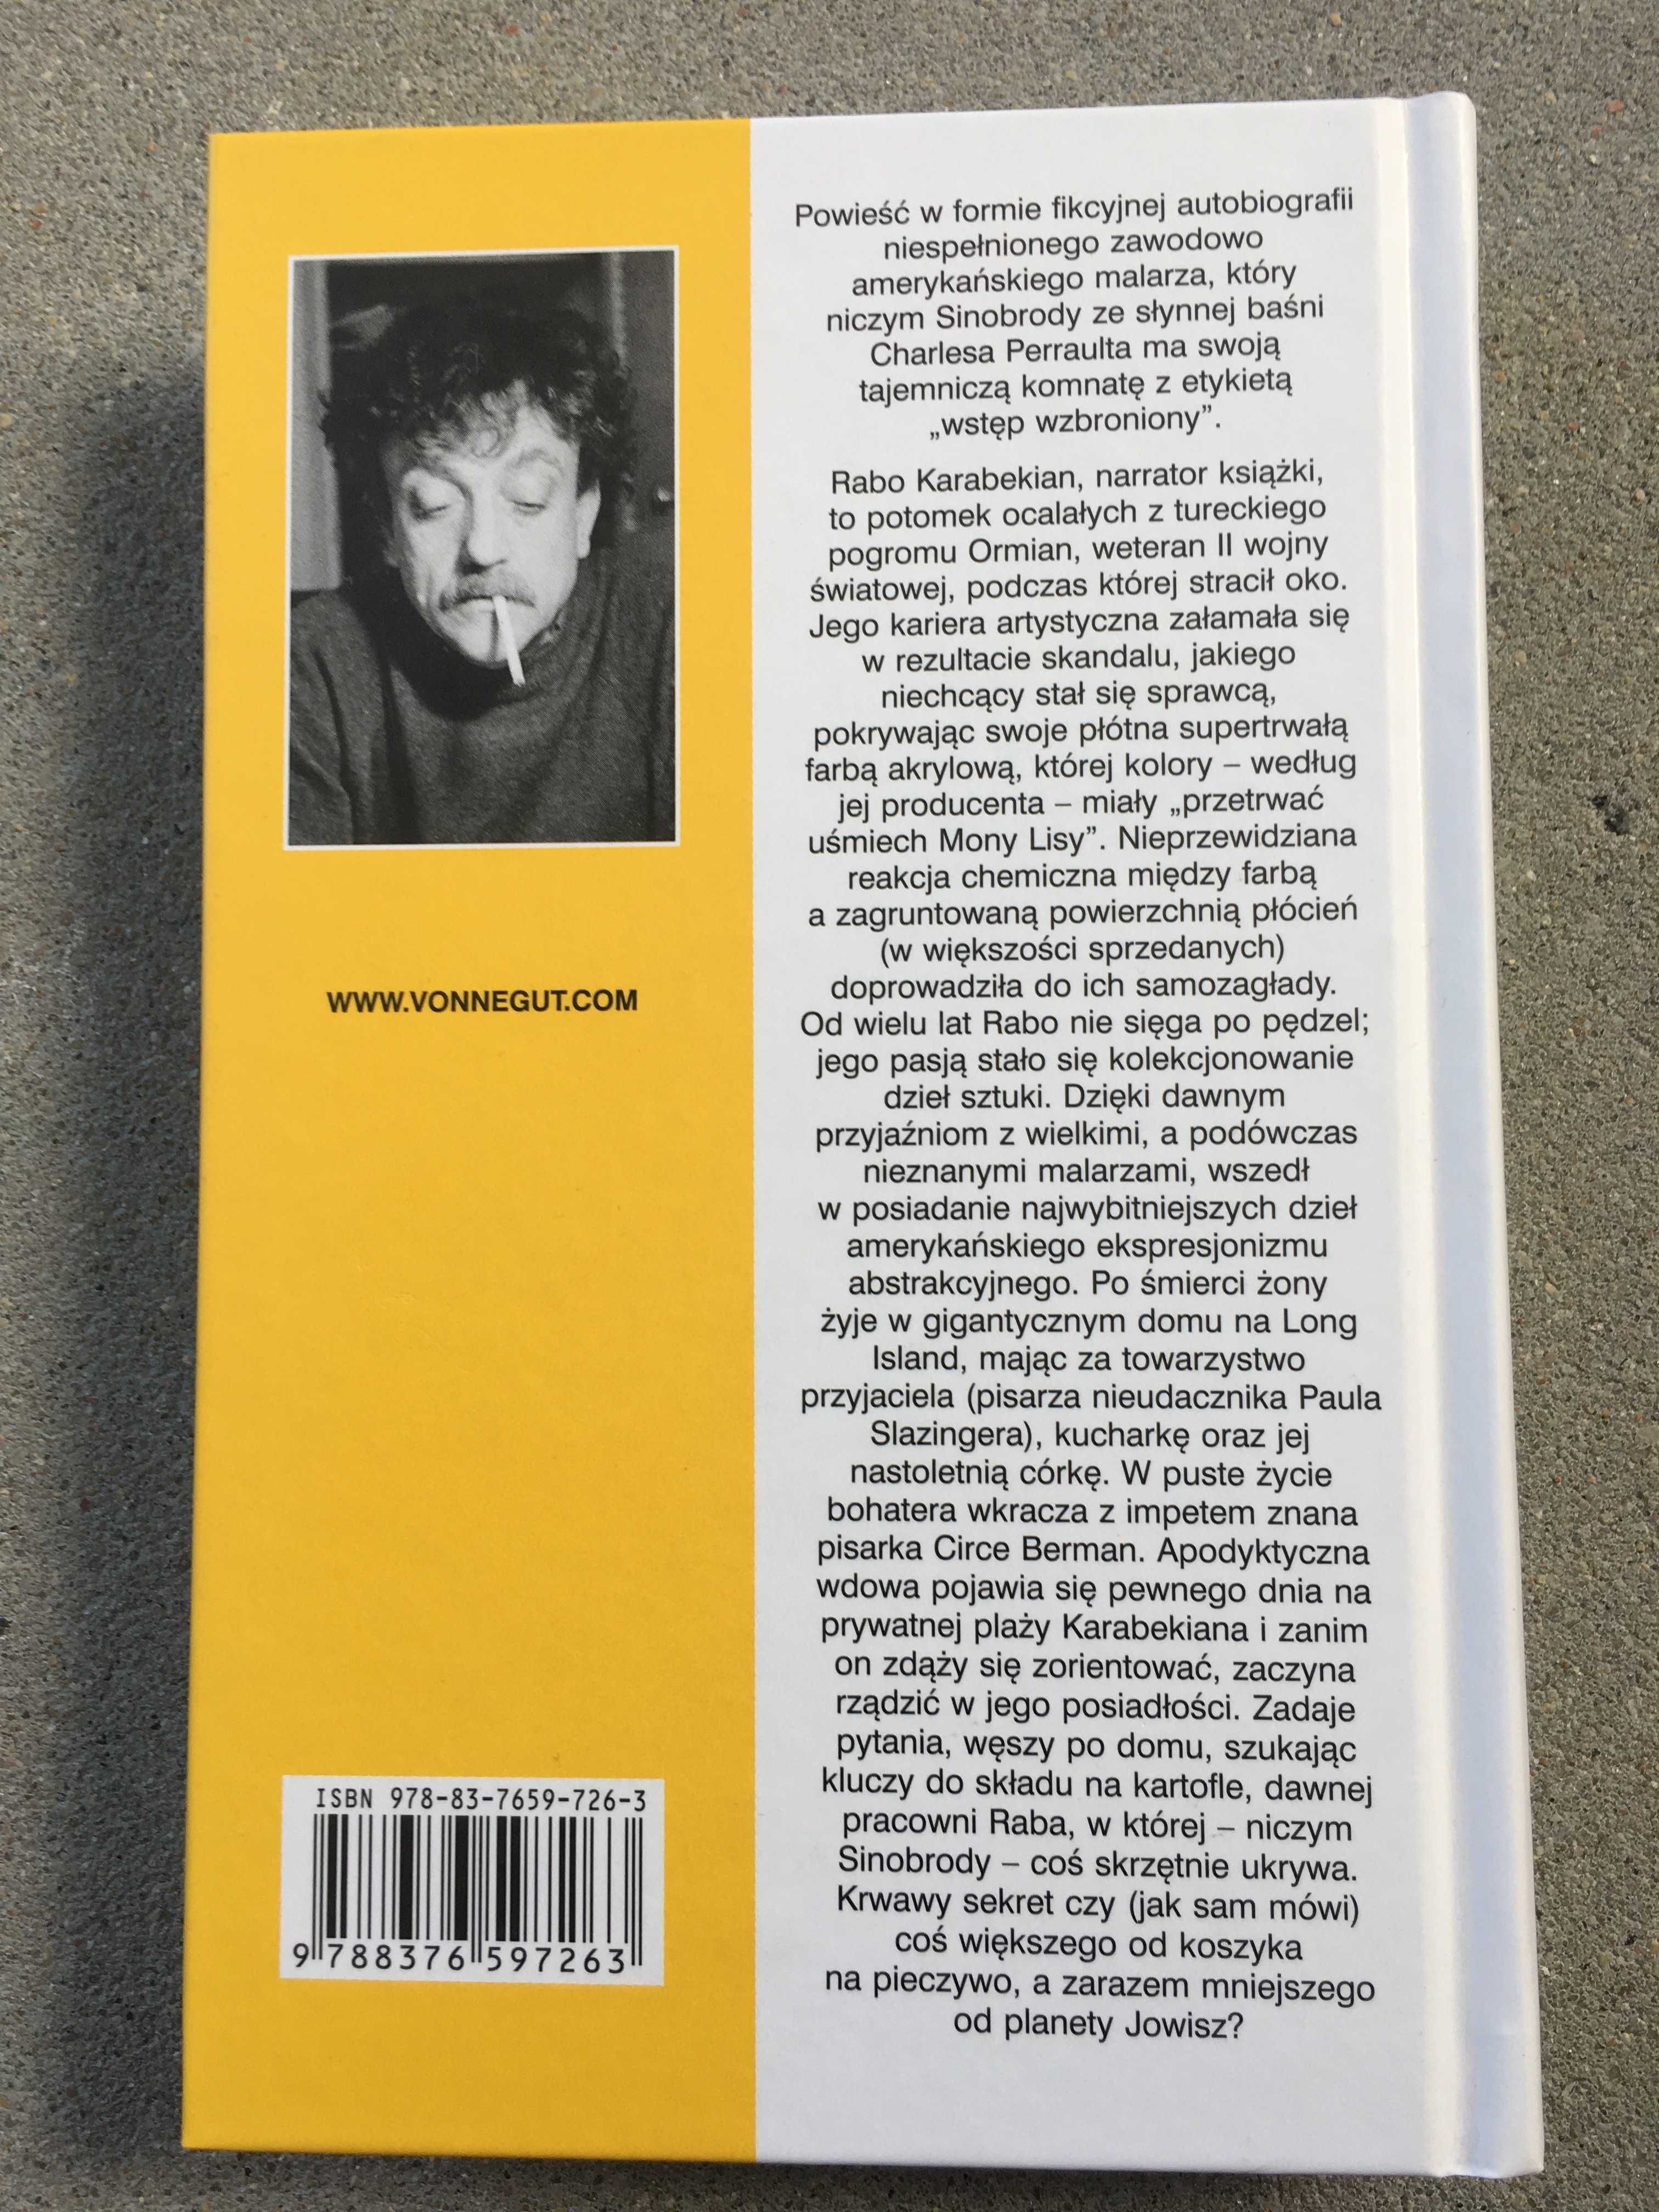 Książka powieść Kurt Vonnegut Sinobrody stan fabryczny